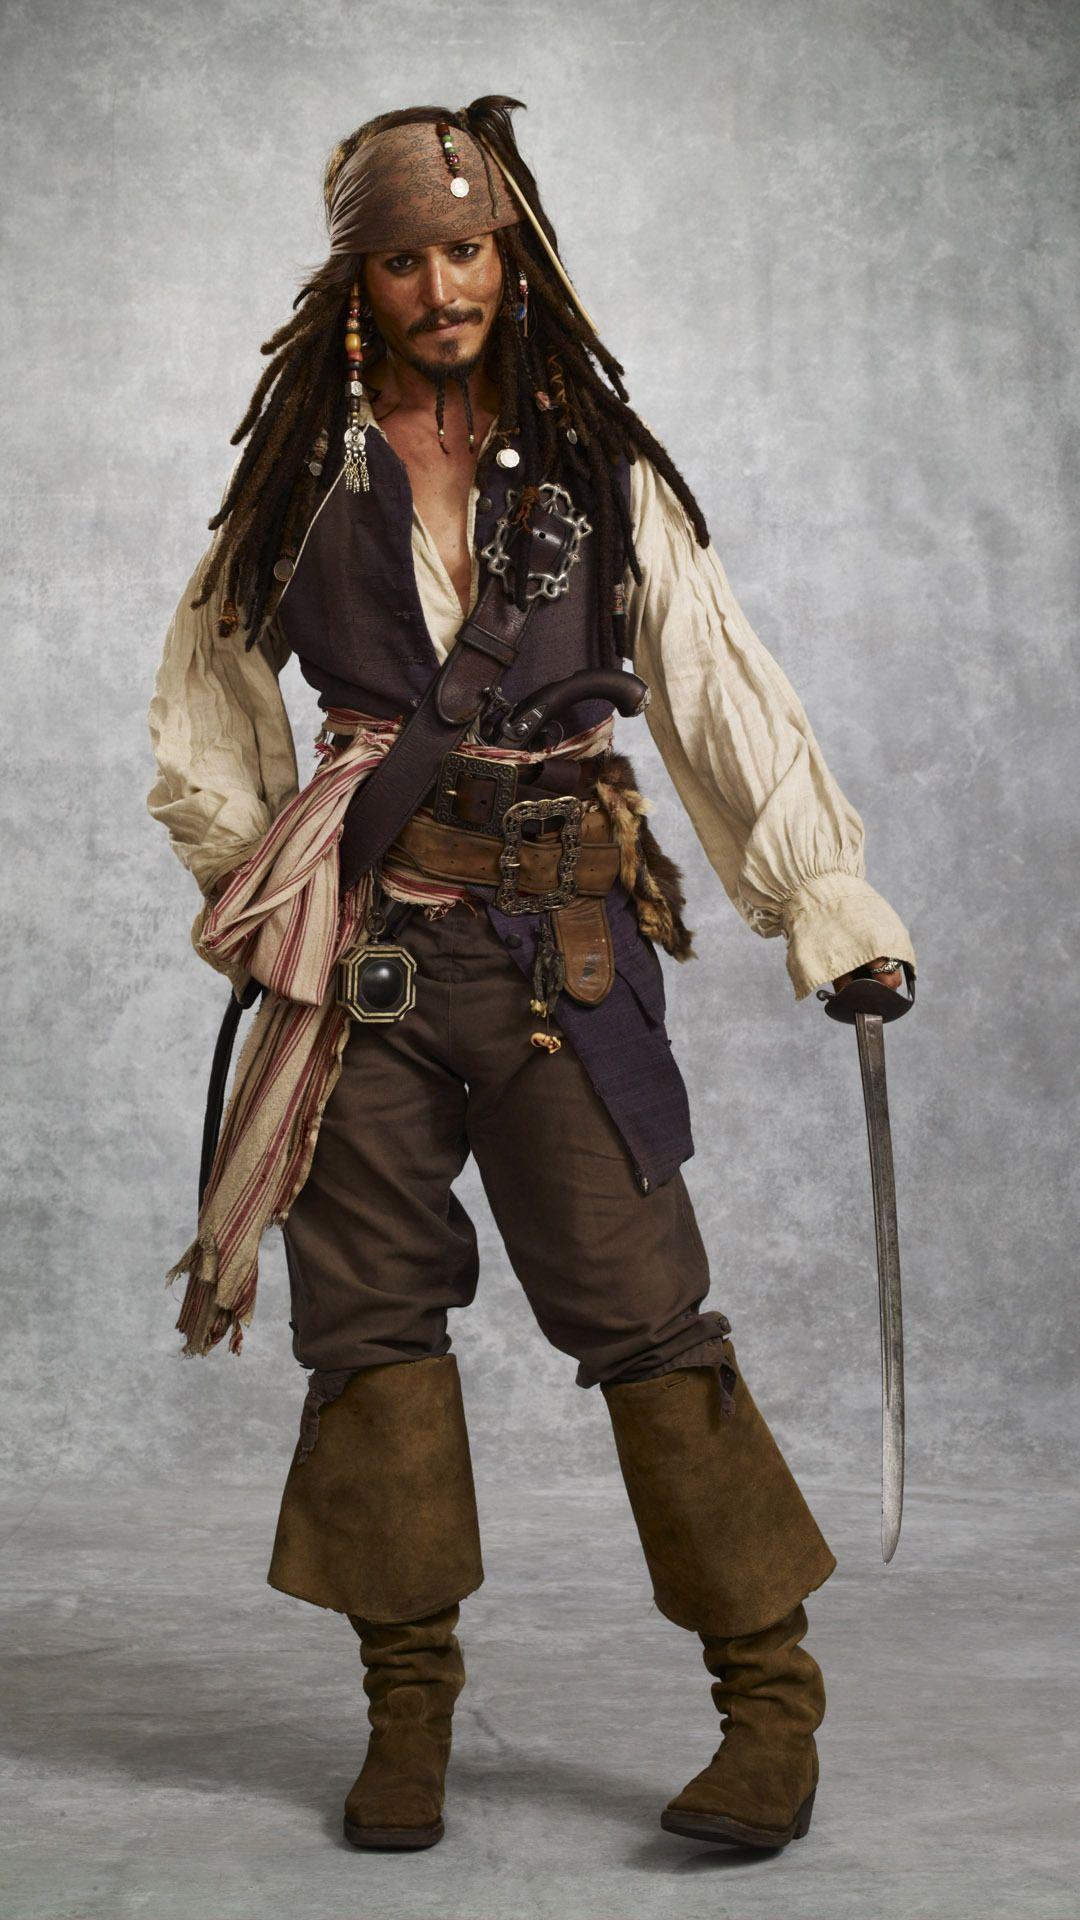 Captain Jack Sparrow Mobile Wallpaper 9110